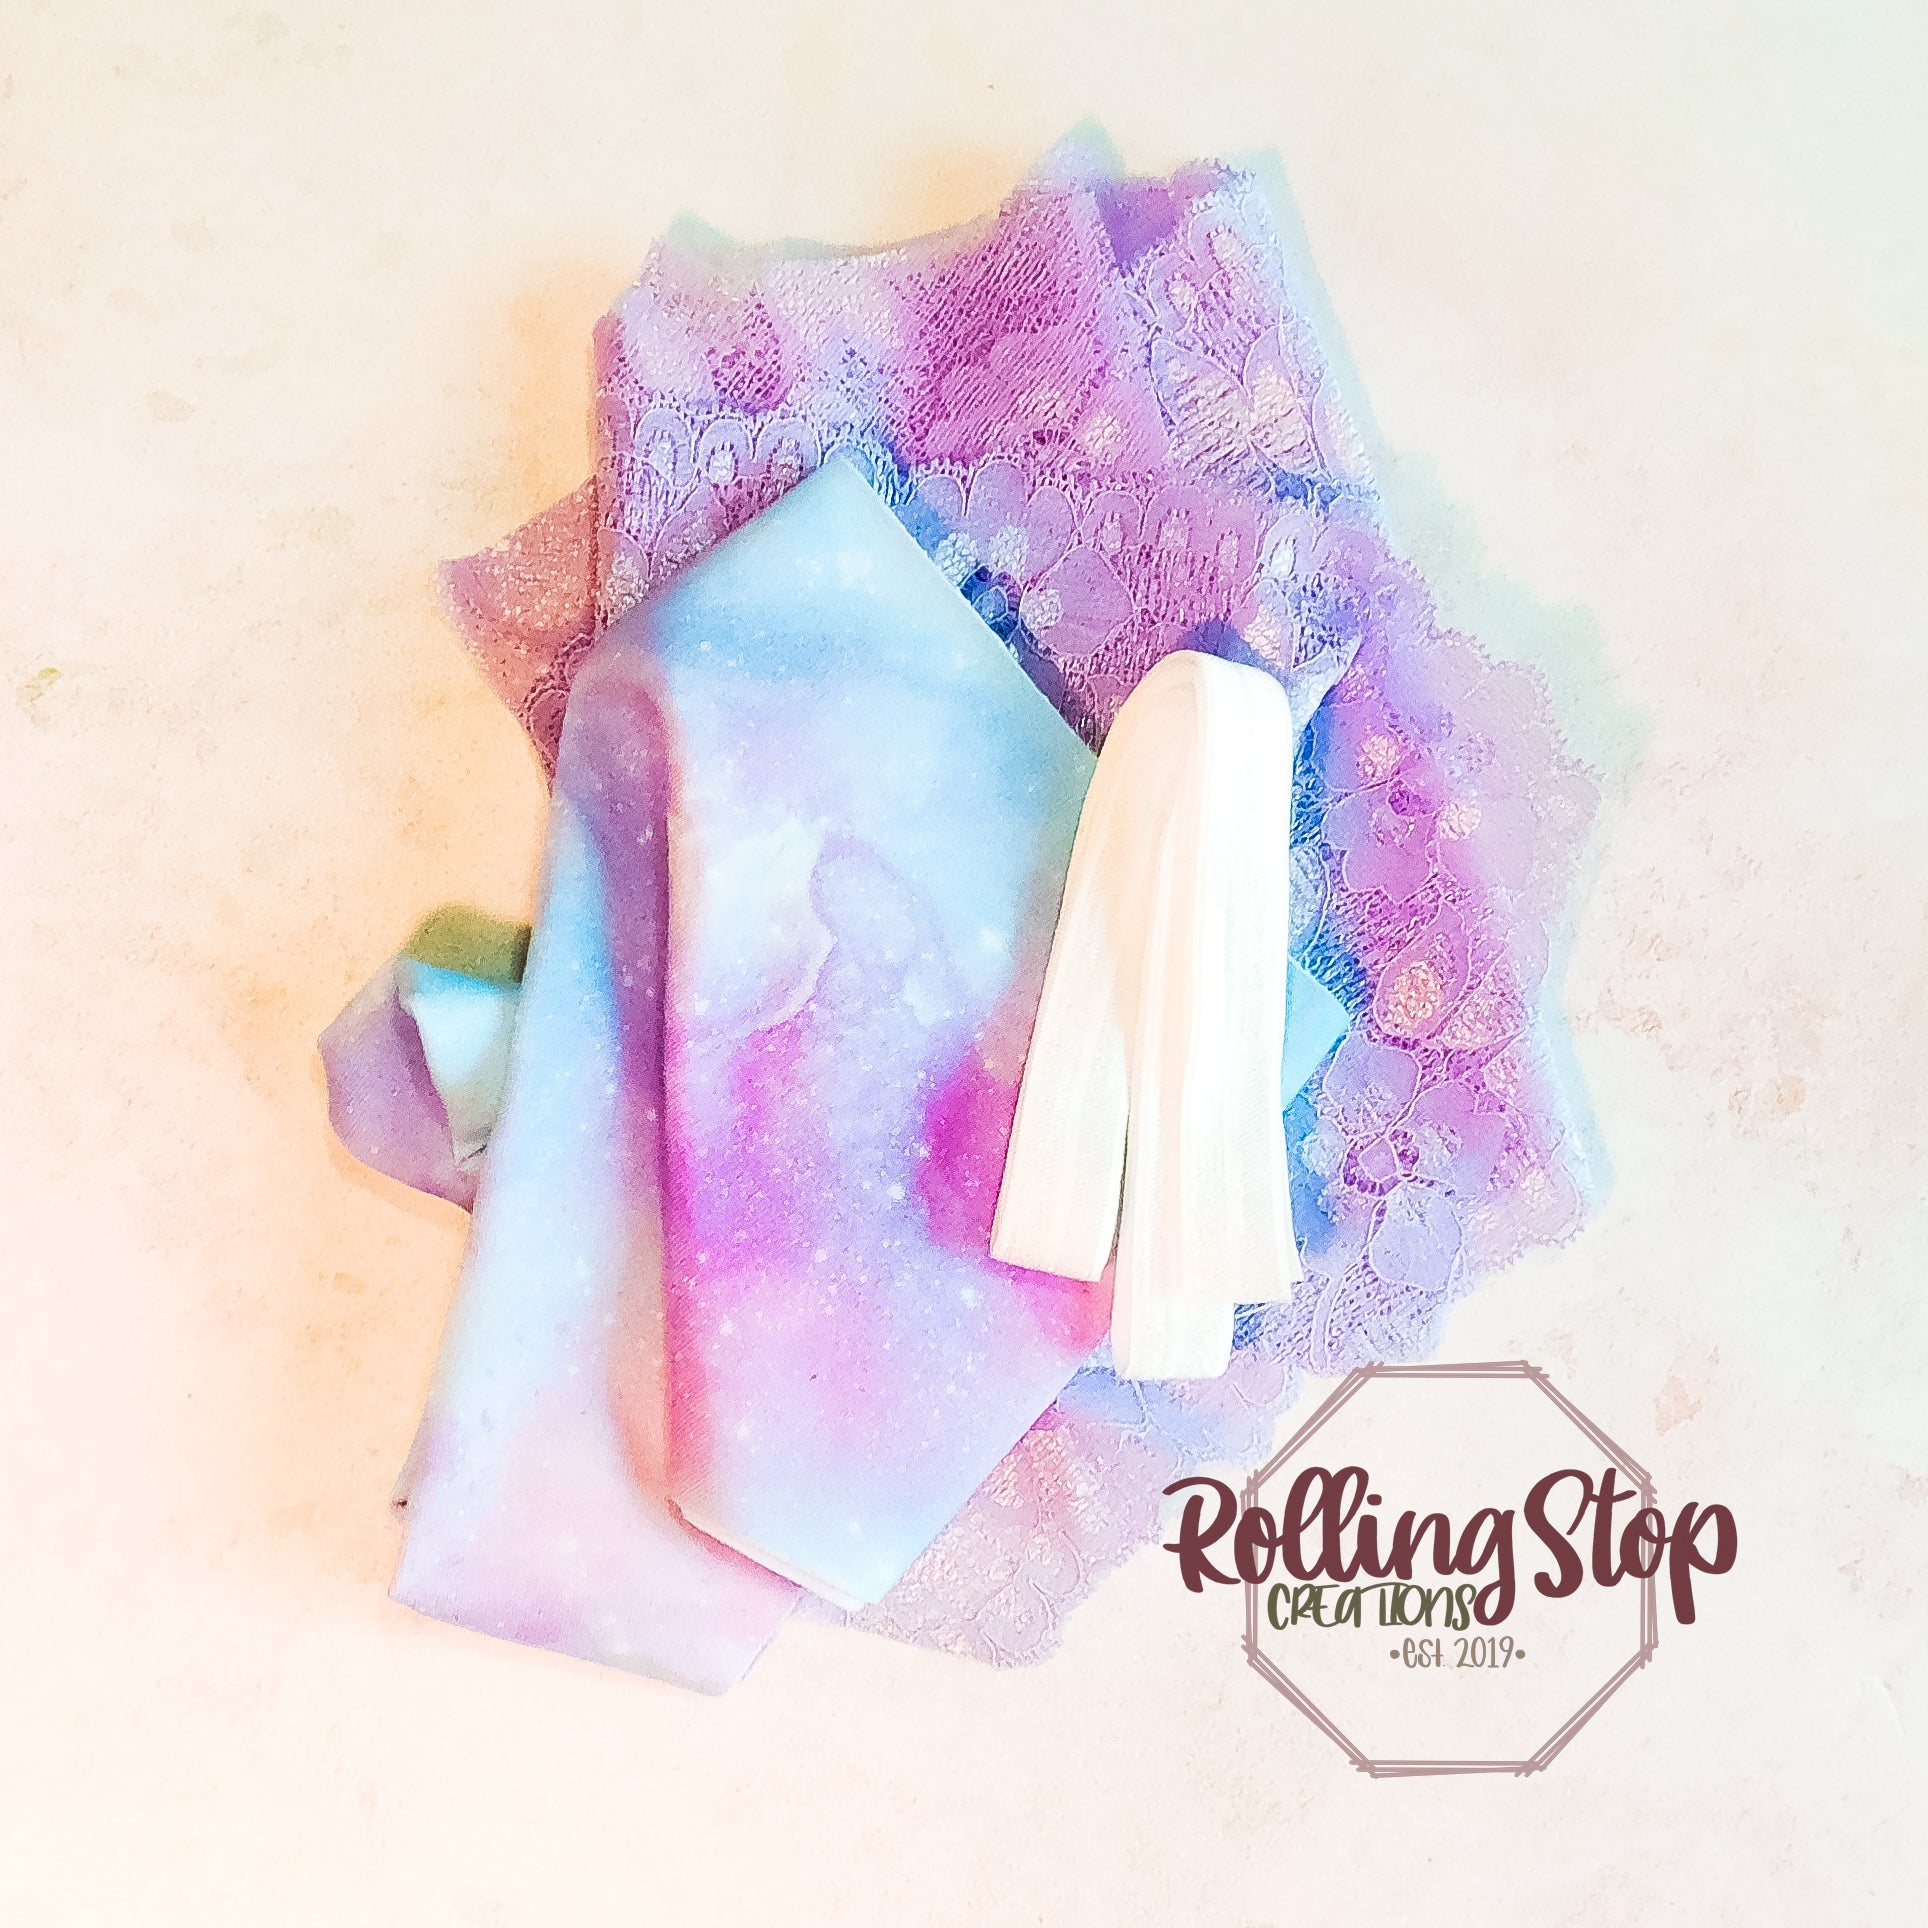 Lena Pastel Galaxy Everyday Jundies by Rolling Stop Creations sold by Rolling Stop Creations Everyday Jundies - Panties